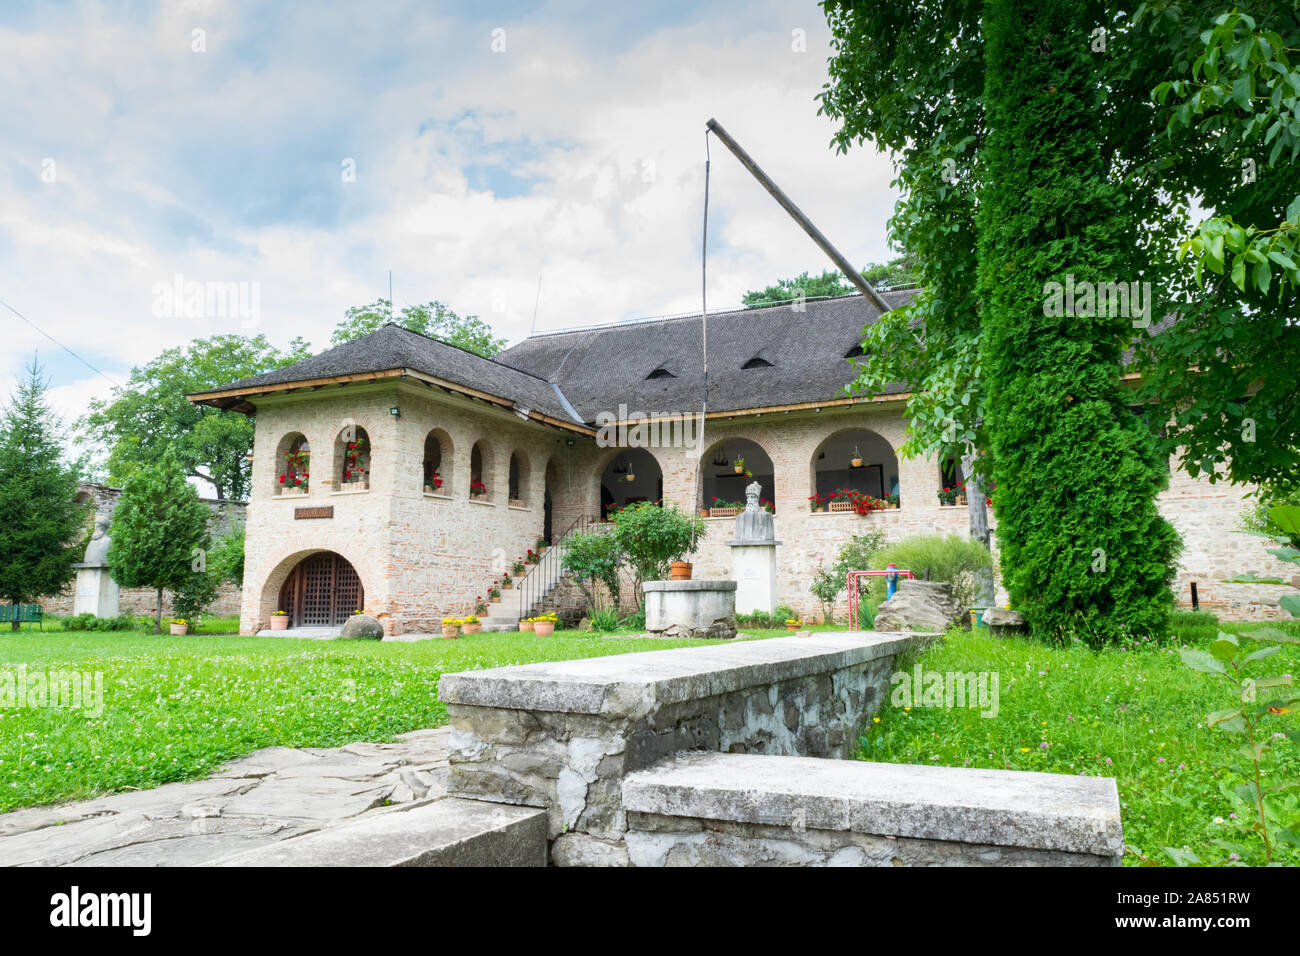 Brebu, Prahova, Romania - 04 agosto 2019: Il Royal House Museum edificio dal monastero Brebu complesso situato in Brebu, Prahova. Foto Stock